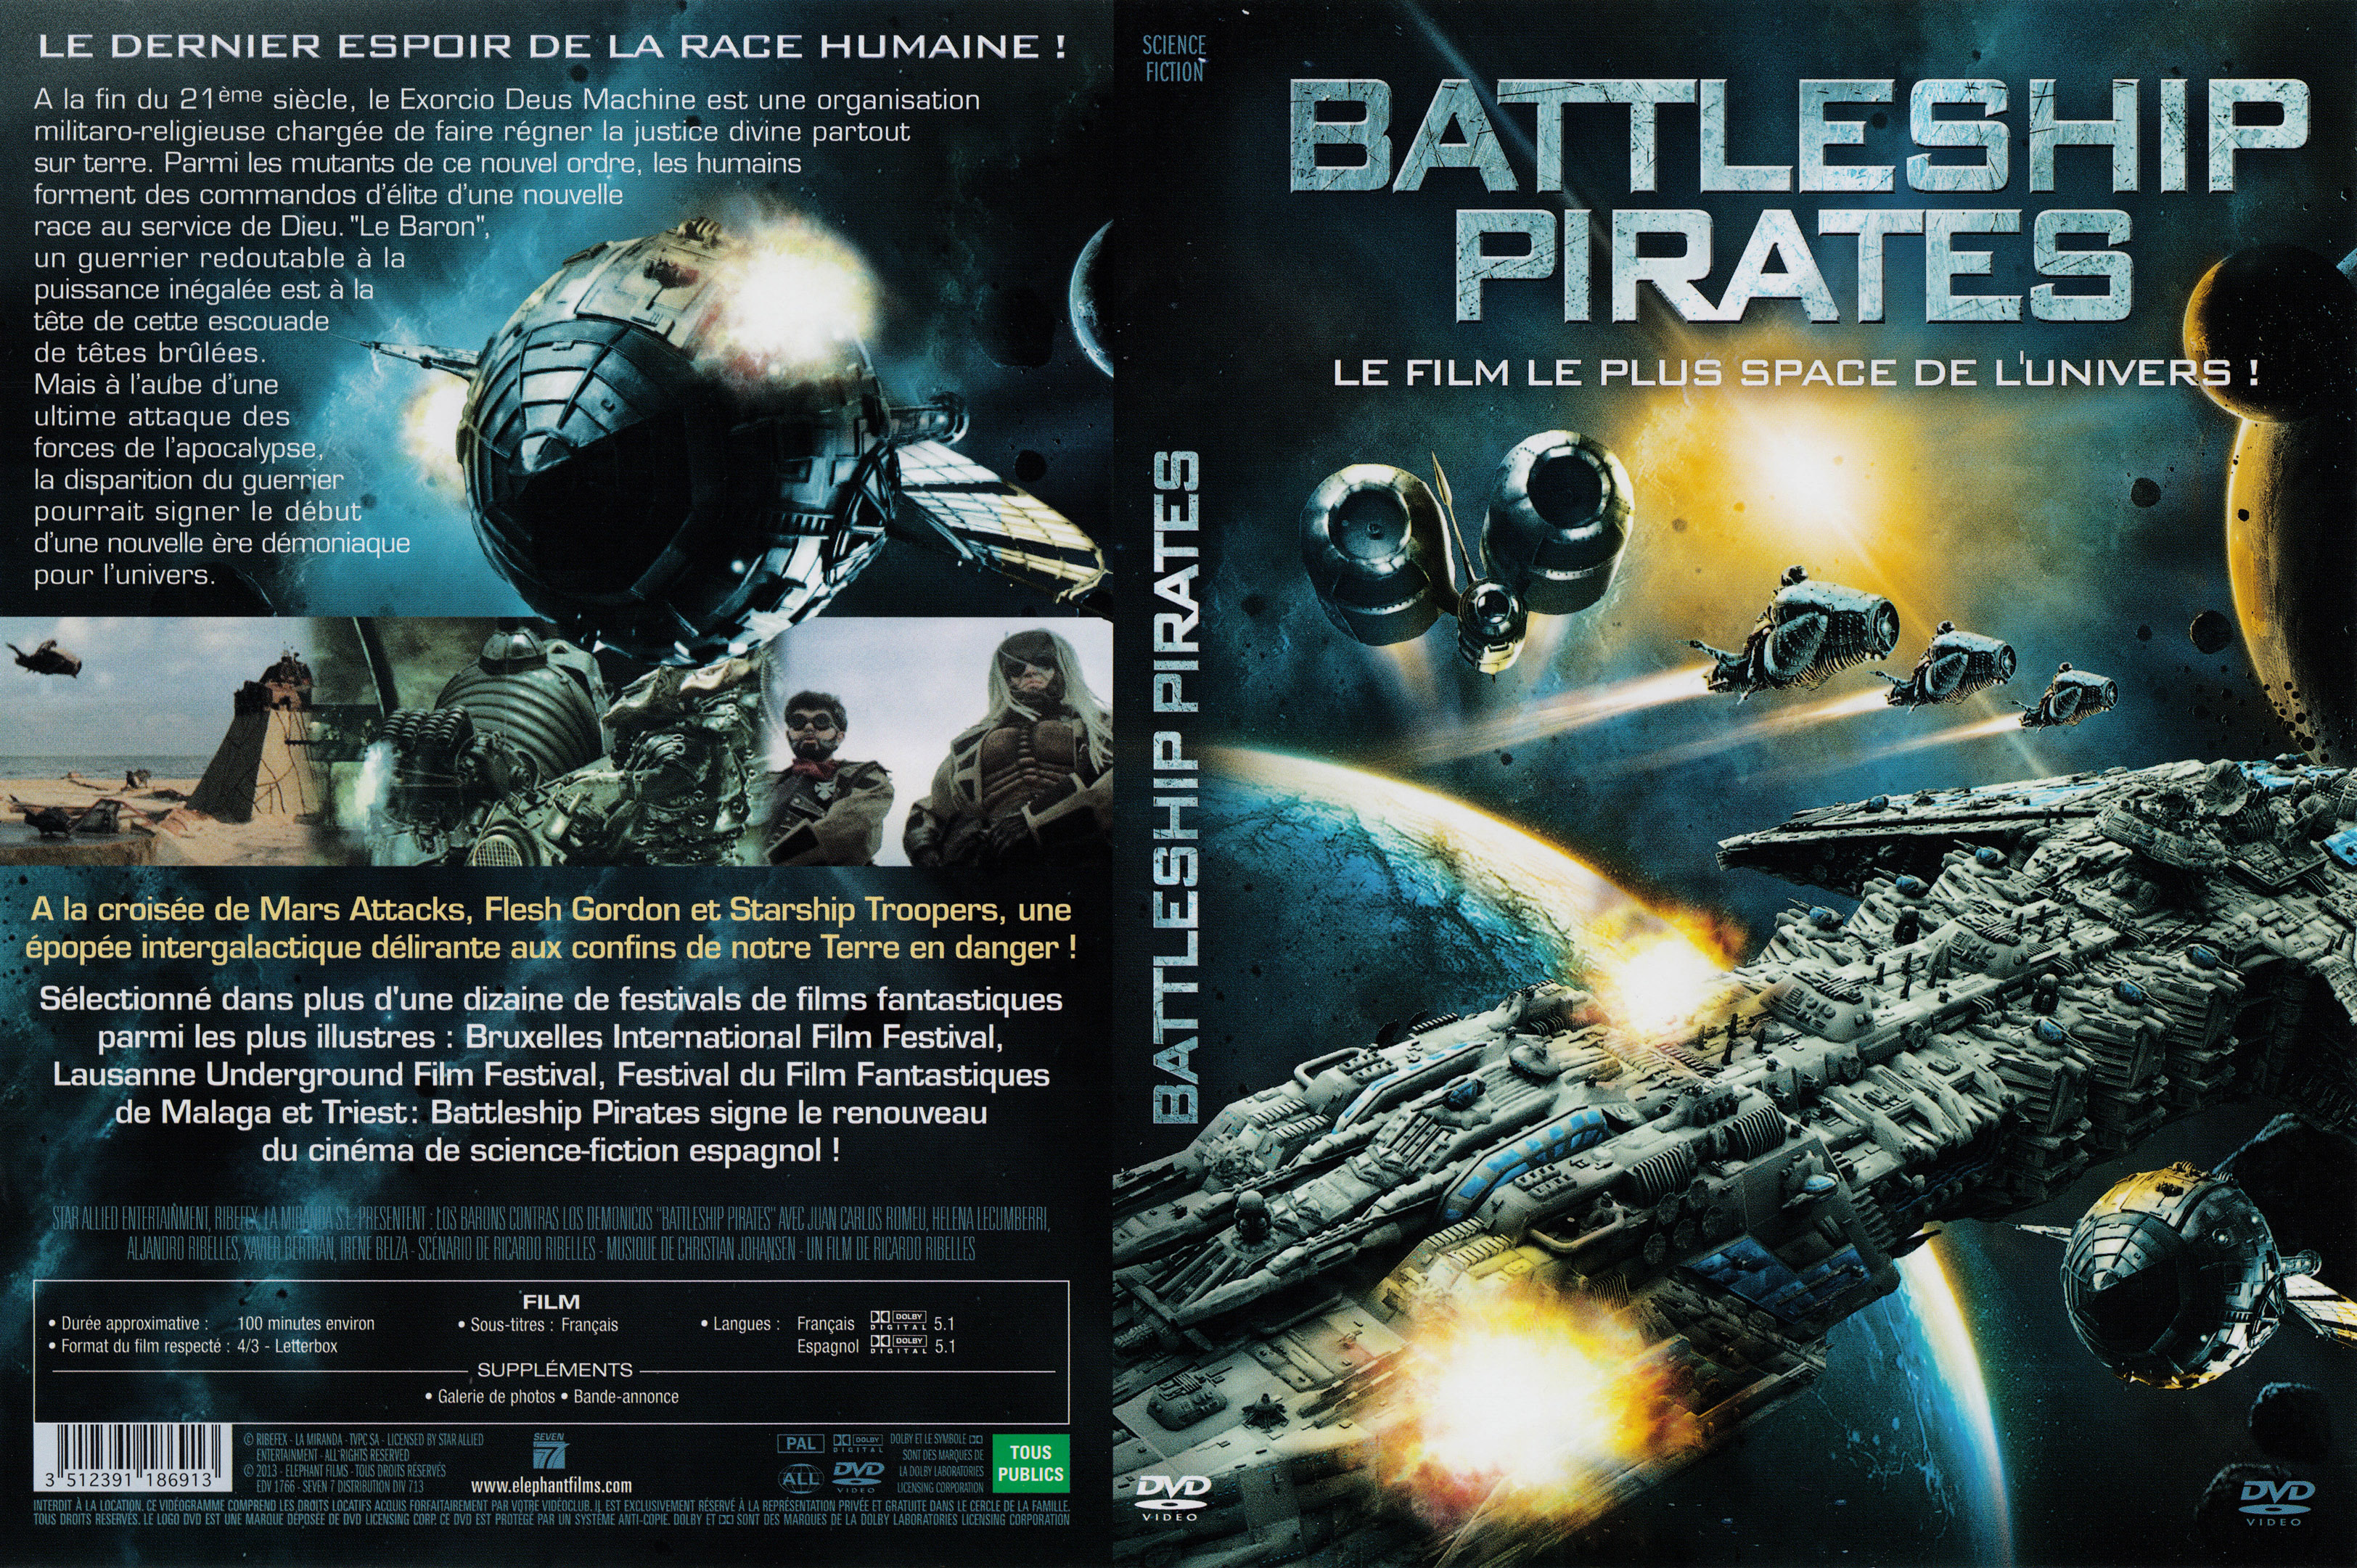 Jaquette DVD Battleship pirates